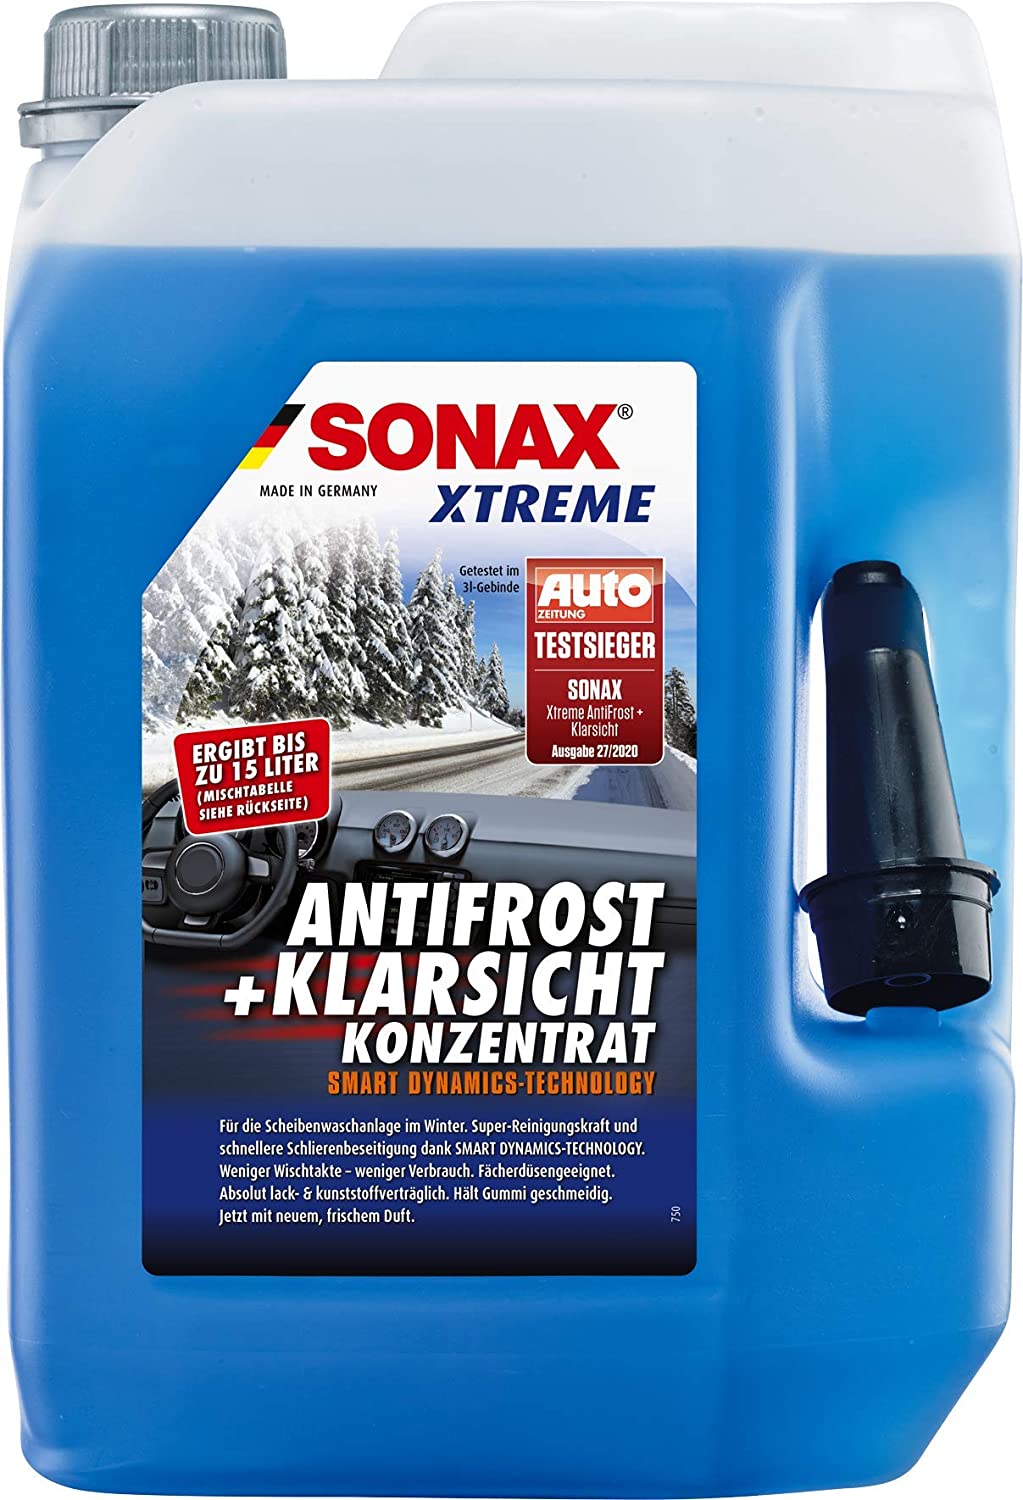 Sonax AntiFrost & KlarSicht, Konzentrat